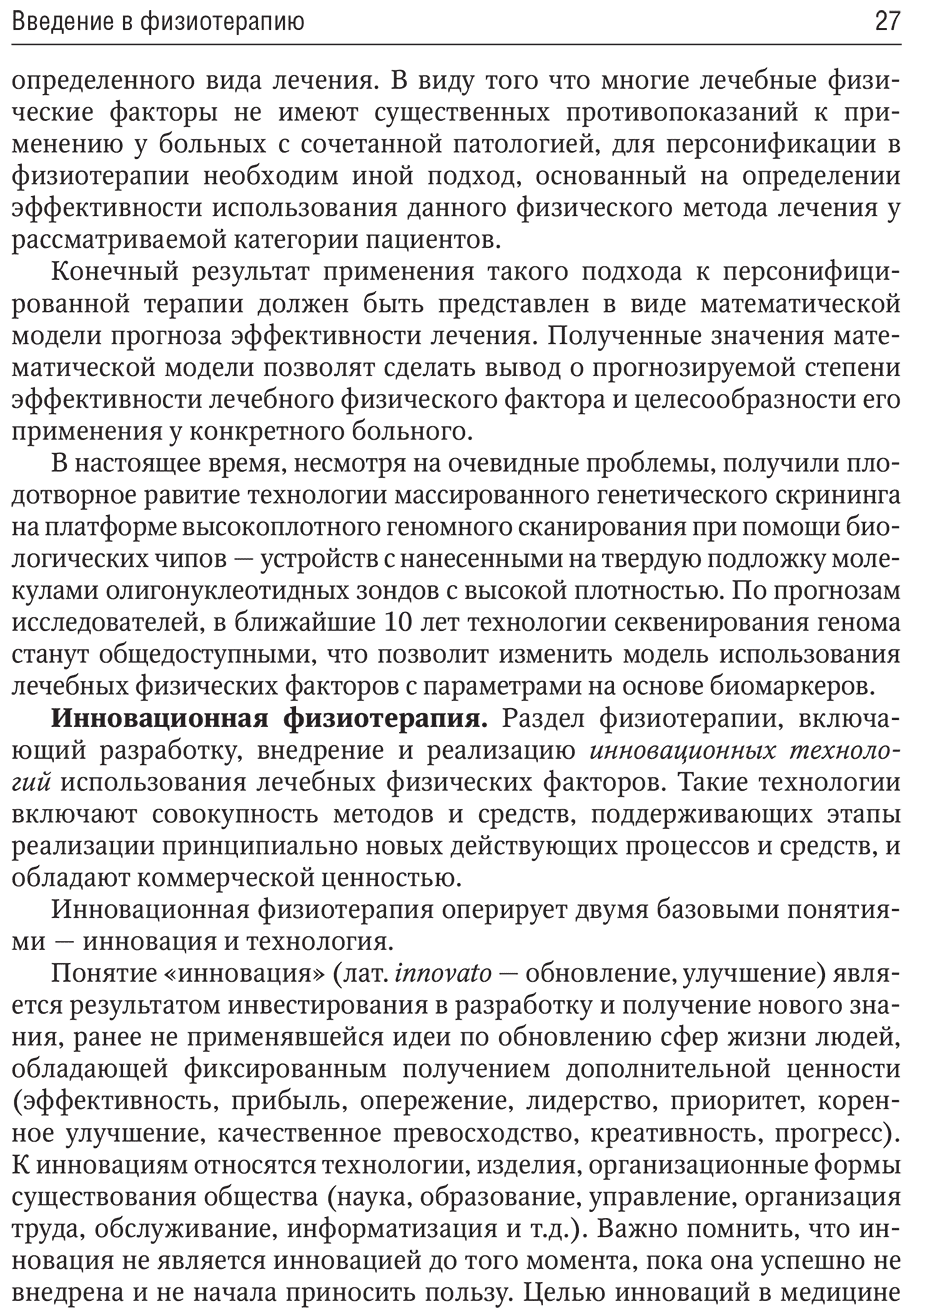 Примеры страниц из книги "Общая физиотерапия: учебник" - Пономаренко Г. Н.